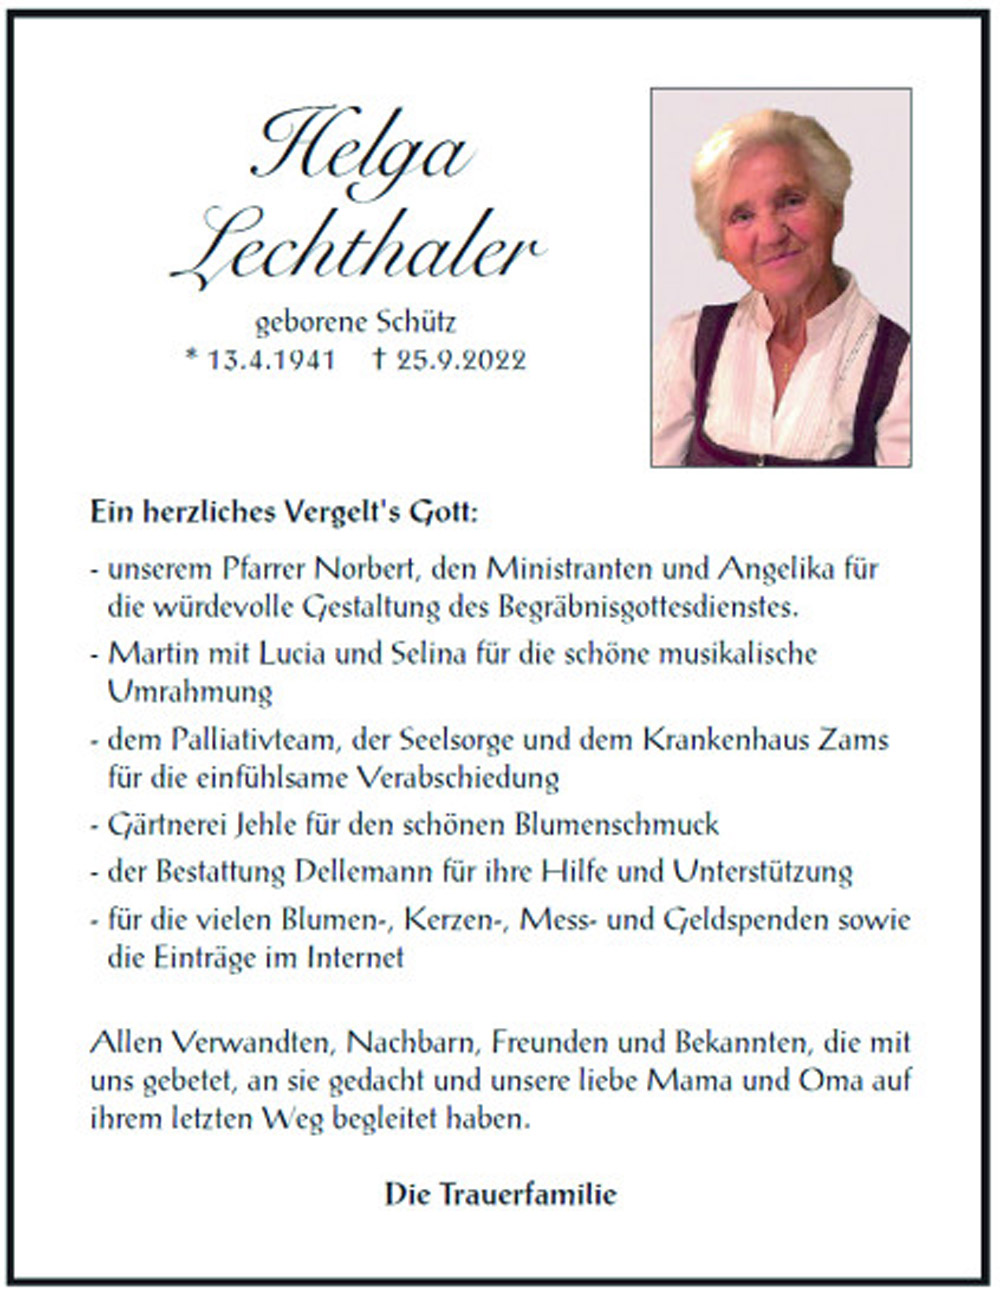 Helga Lechthaler 